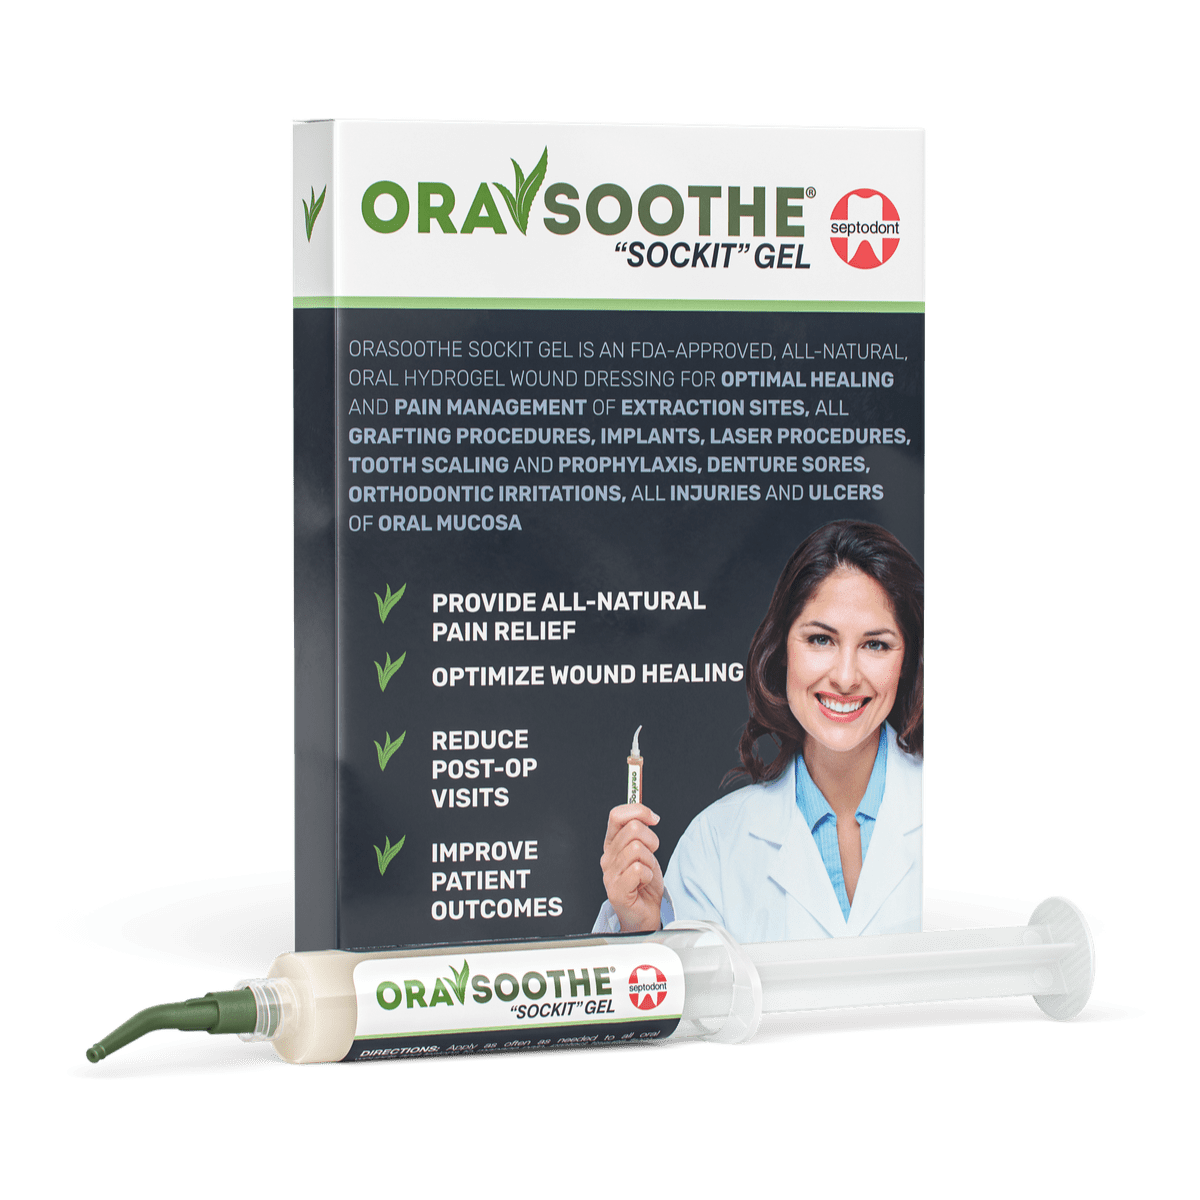 OraSoothe “Sockit” Gel Box